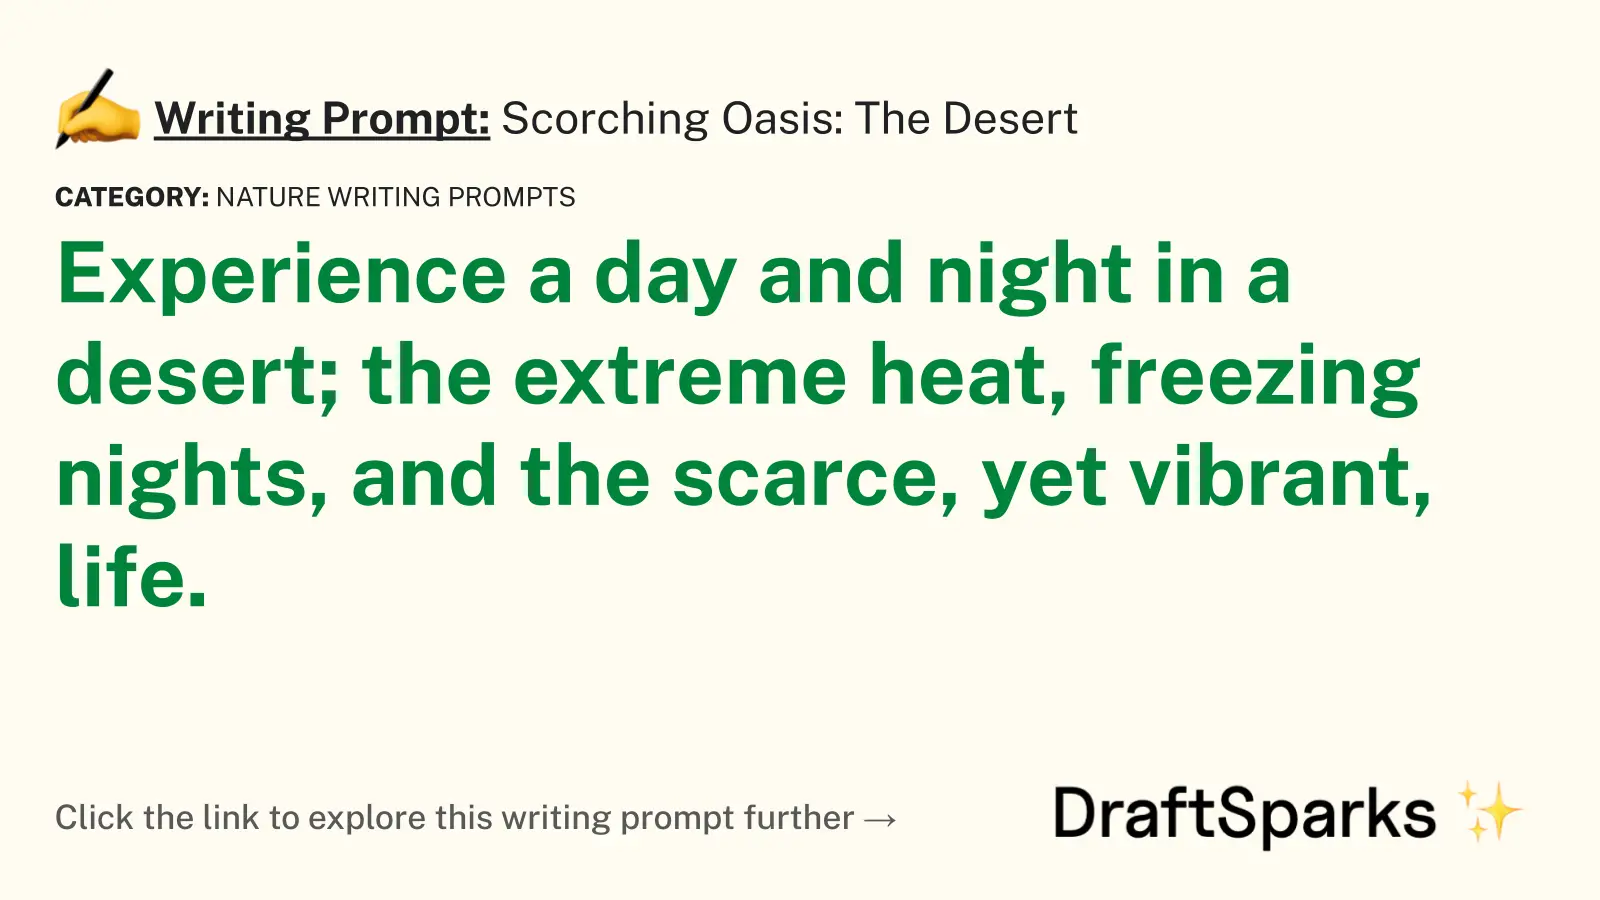 Scorching Oasis: The Desert